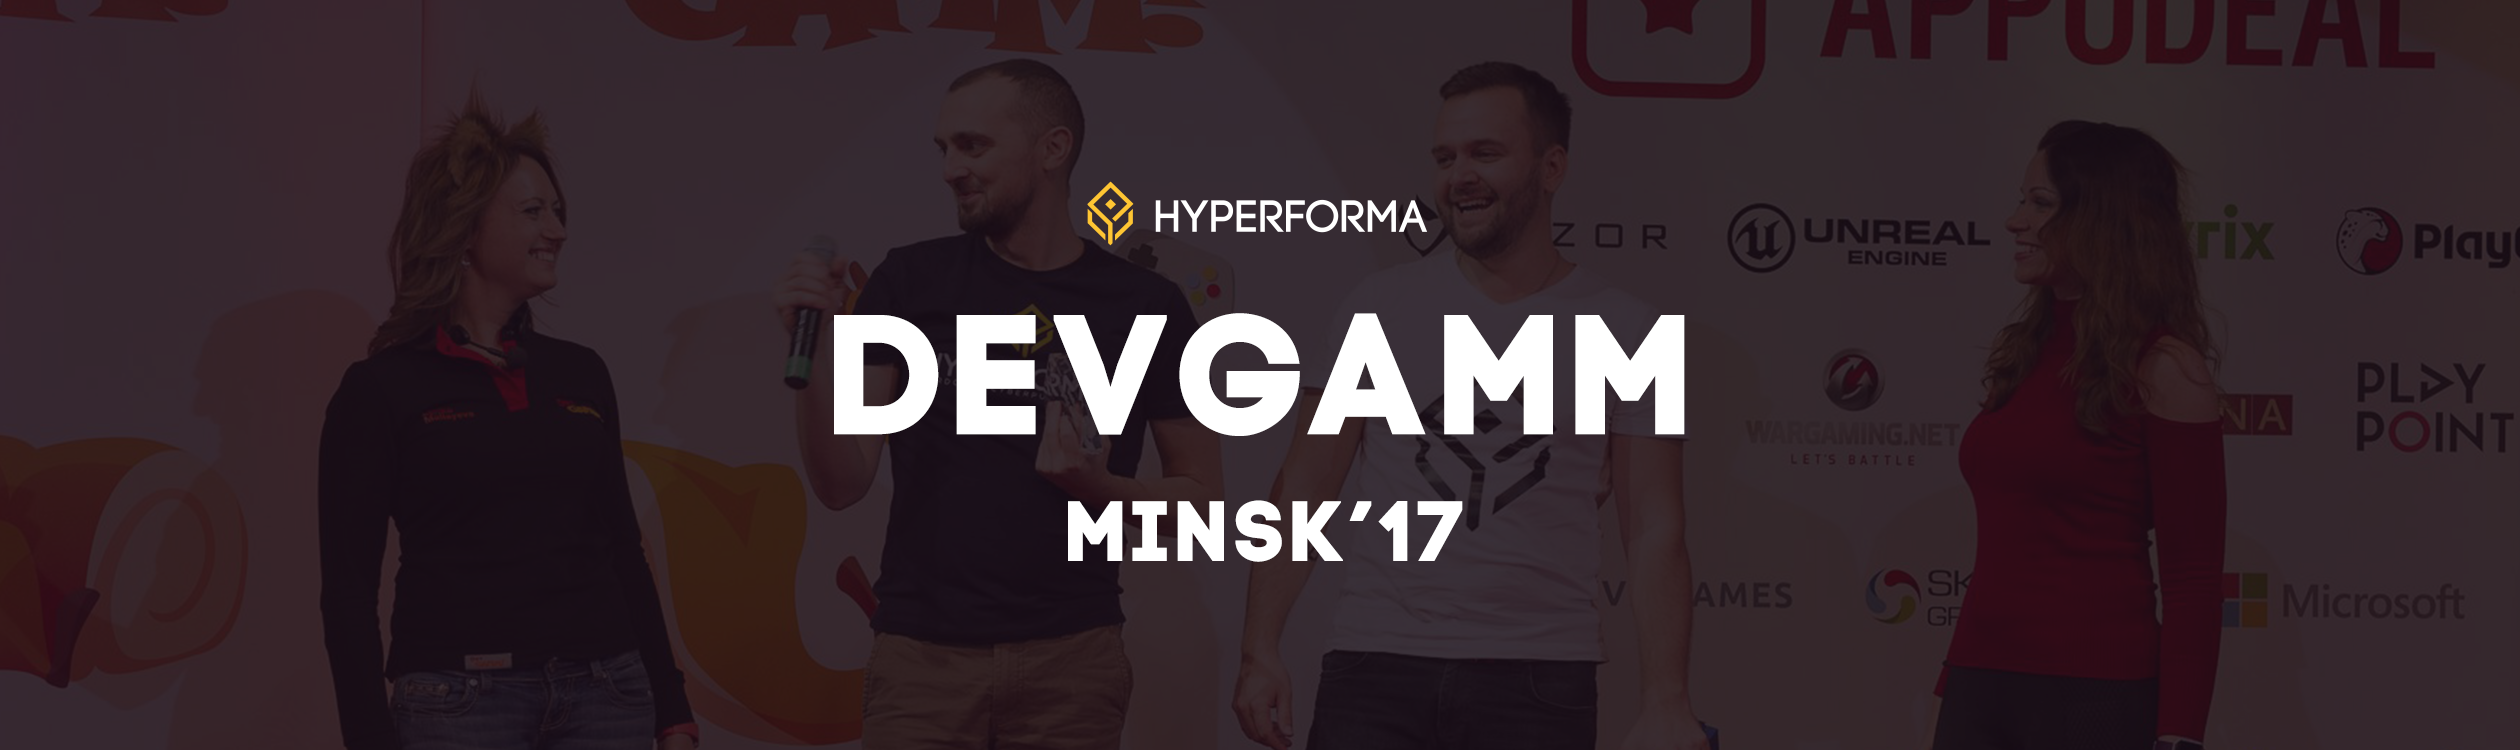 Hyperforma at DevGAMM Minsk 2017